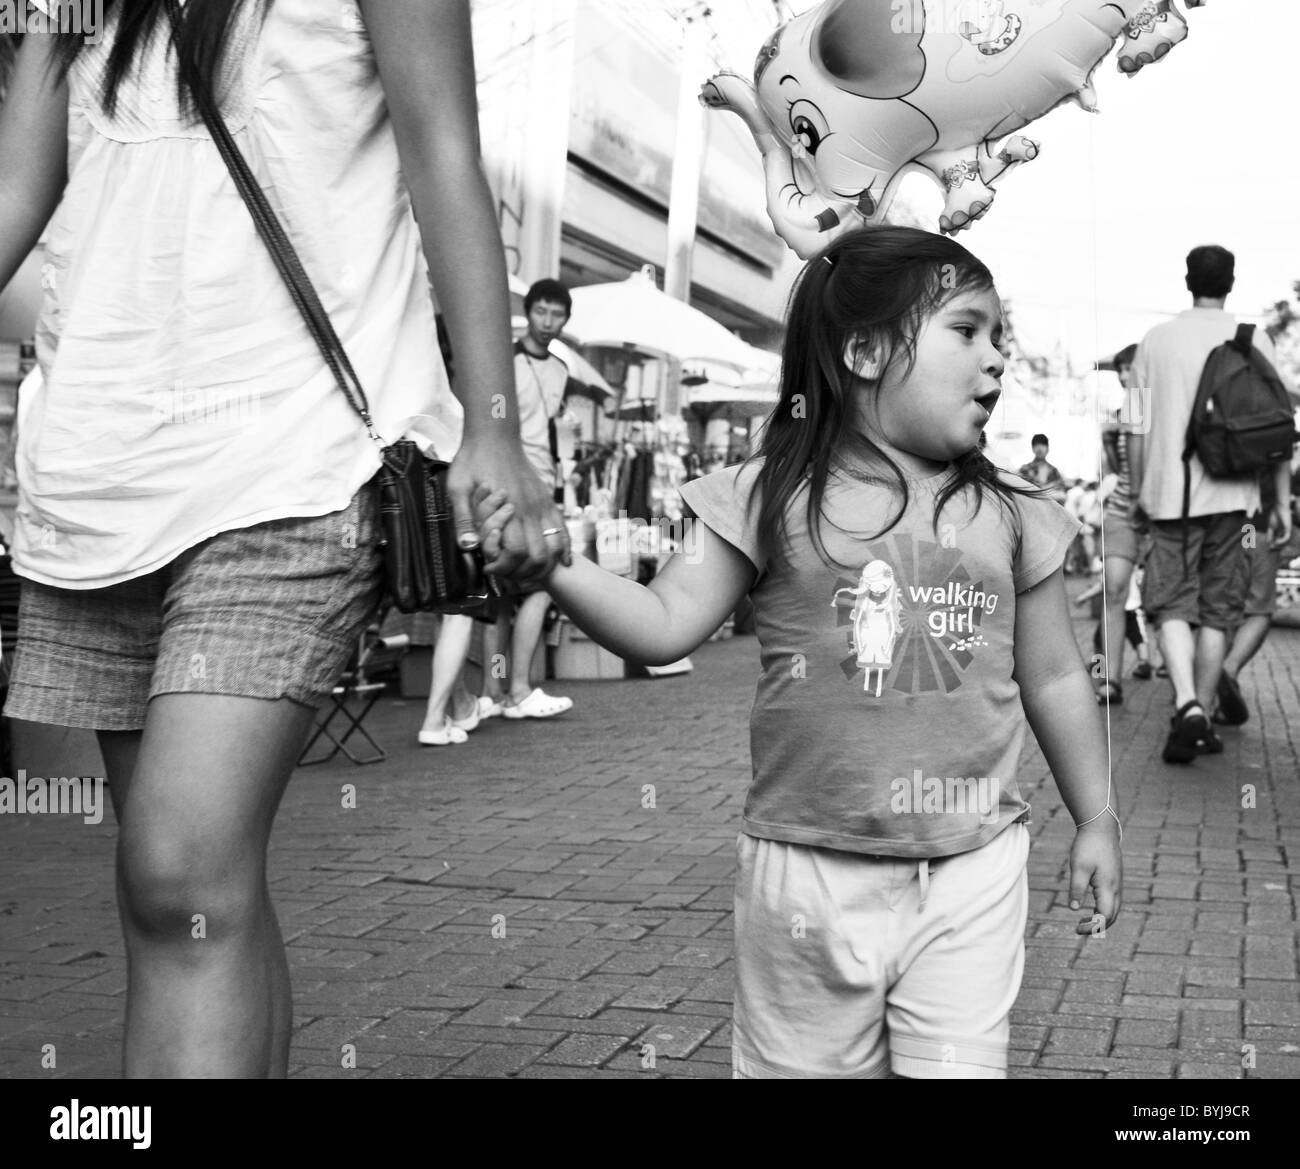 Schwarz / weiß candid Foto von einem jungen Thai Mädchen auf einer Straße Stockfoto